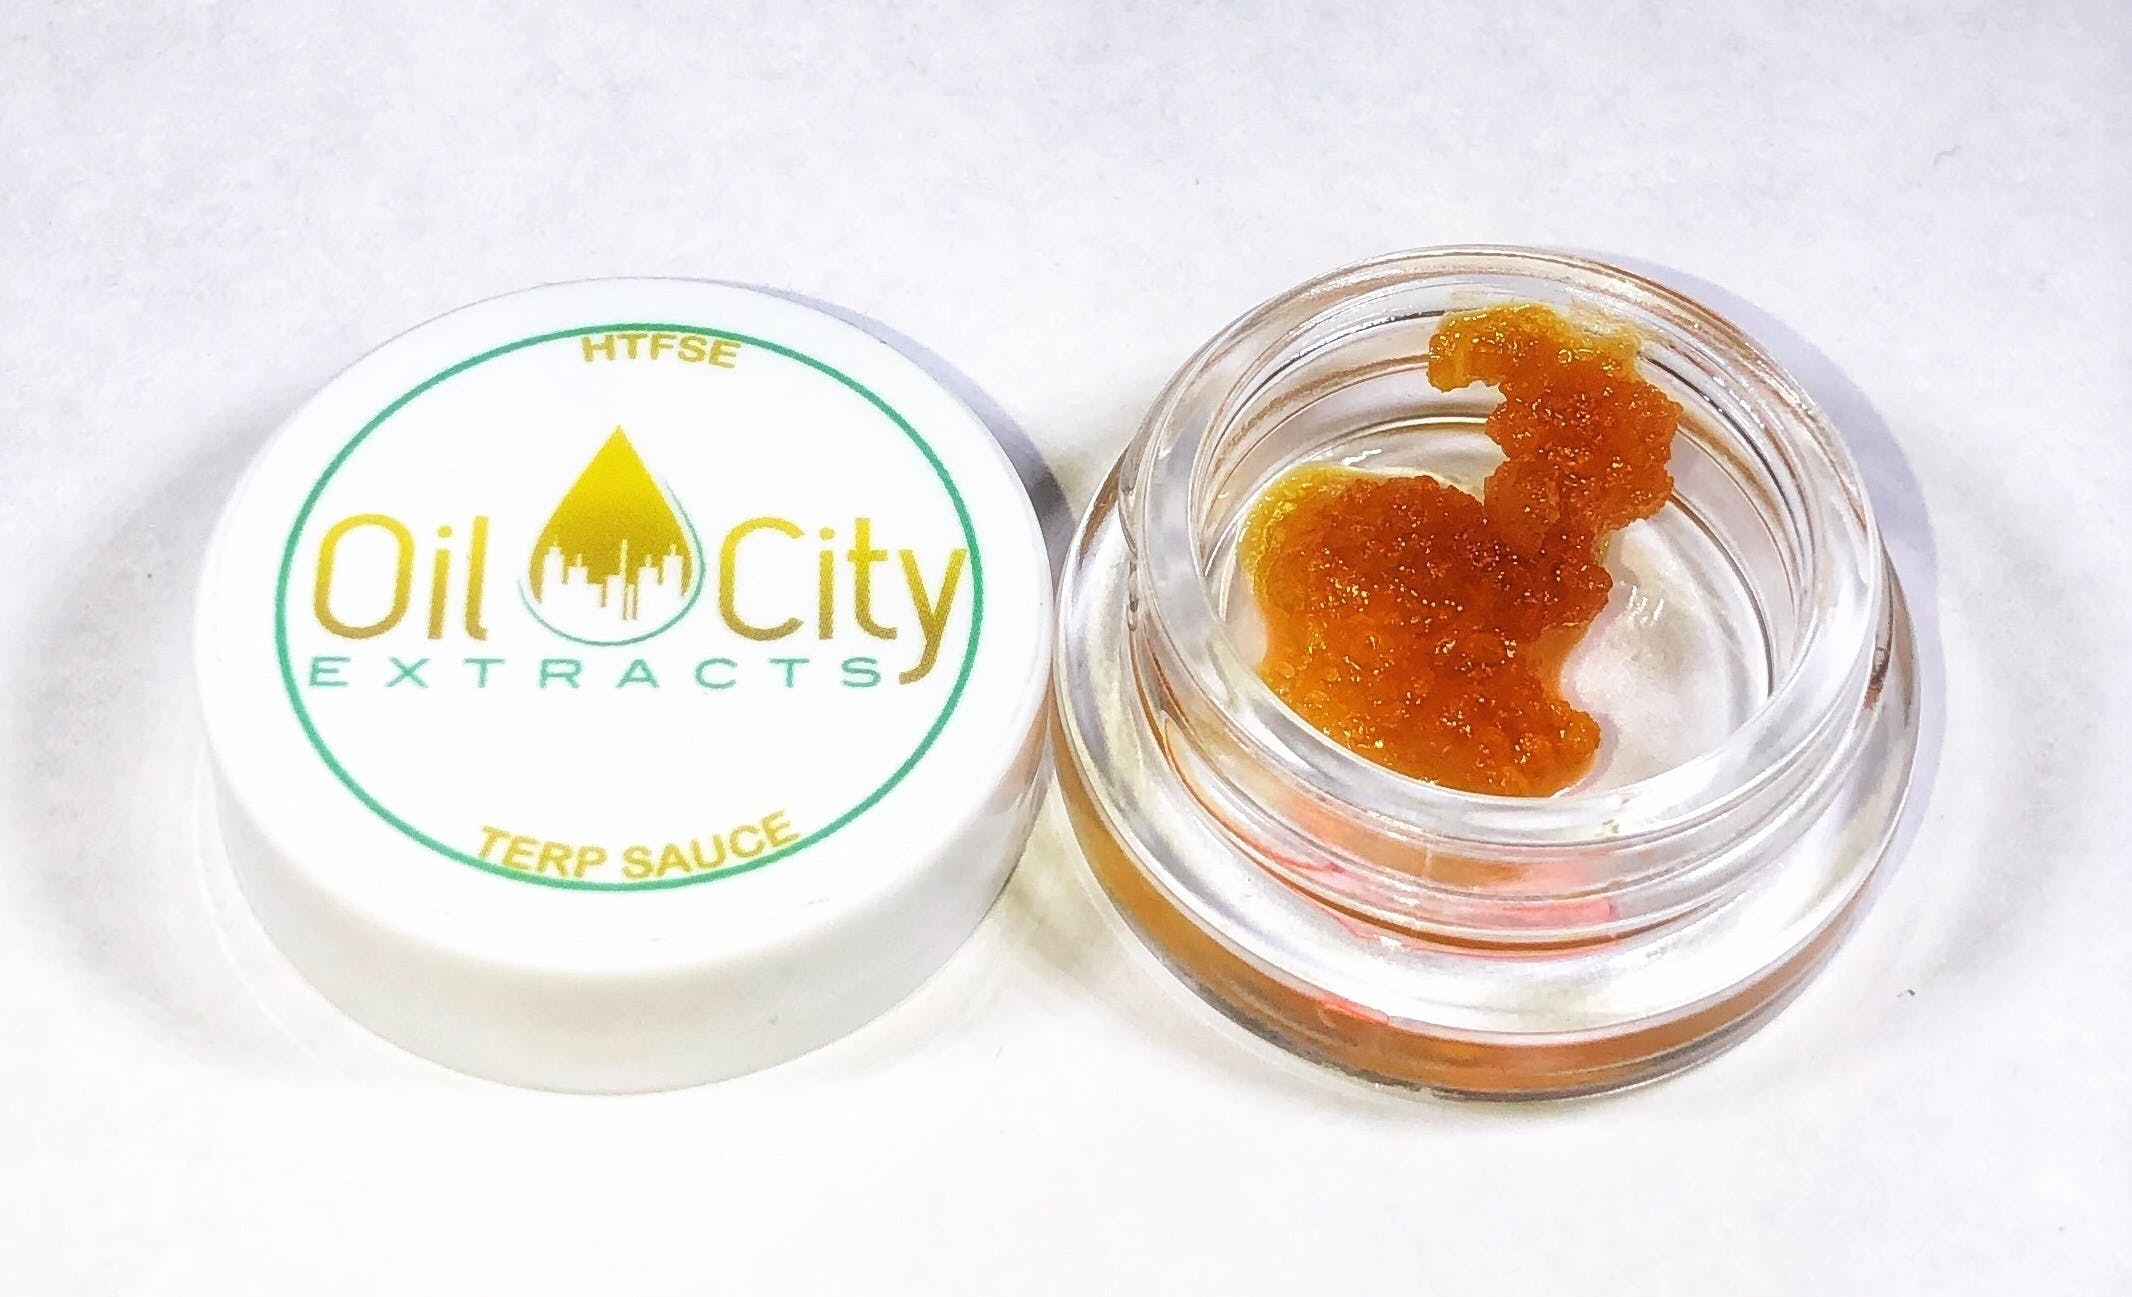 marijuana-dispensaries-3557-wilder-rd-bay-city-oil-city-extracts-terp-sauce